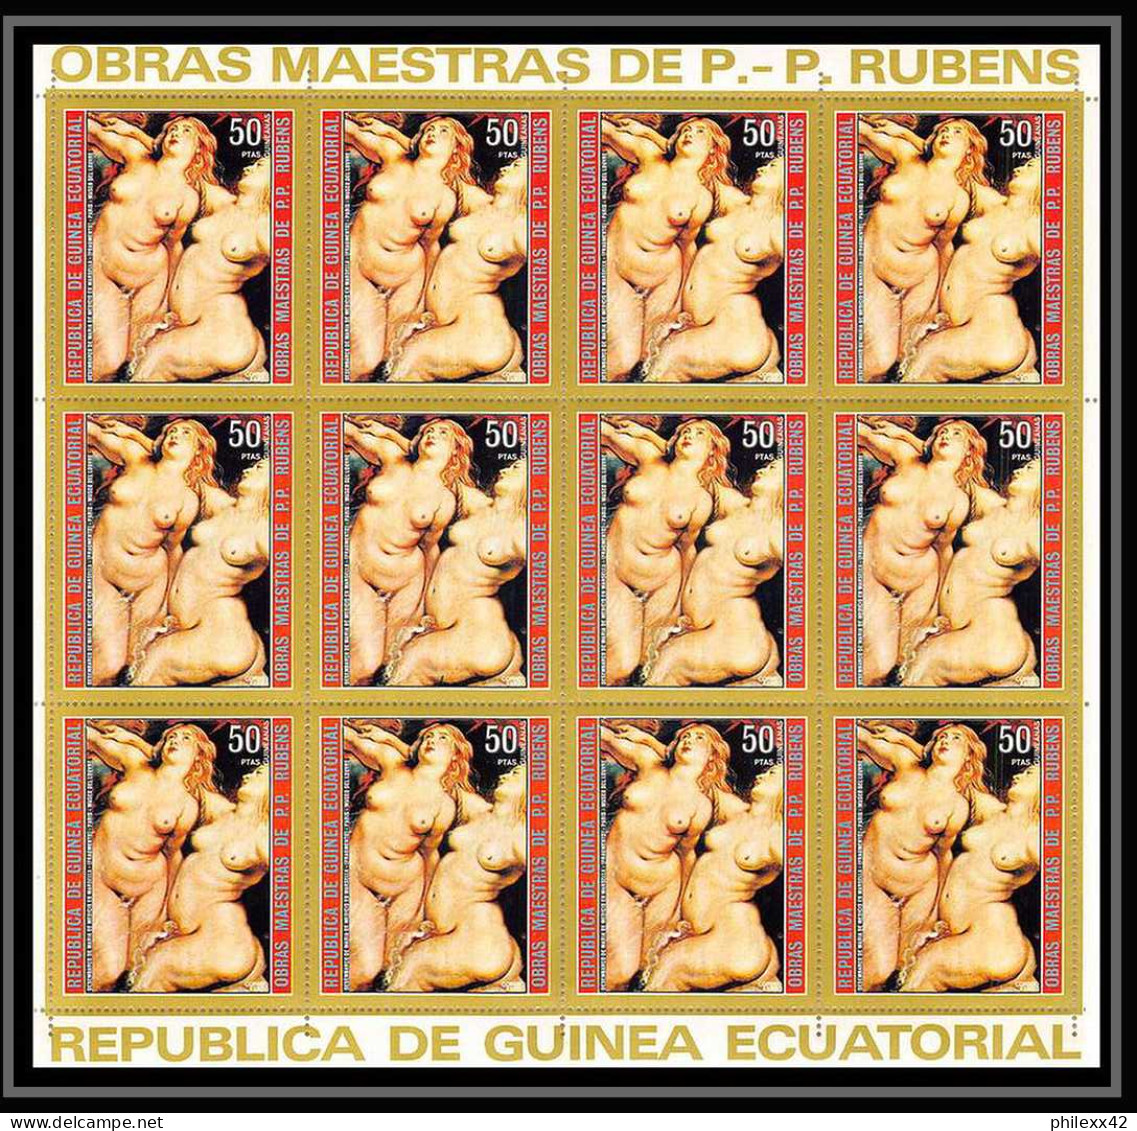 60008 neuf ** MNH mi N°285/291 1973 rubens Tableau (Painting) nus nude Guinée équatoriale guinea feuilles sheets